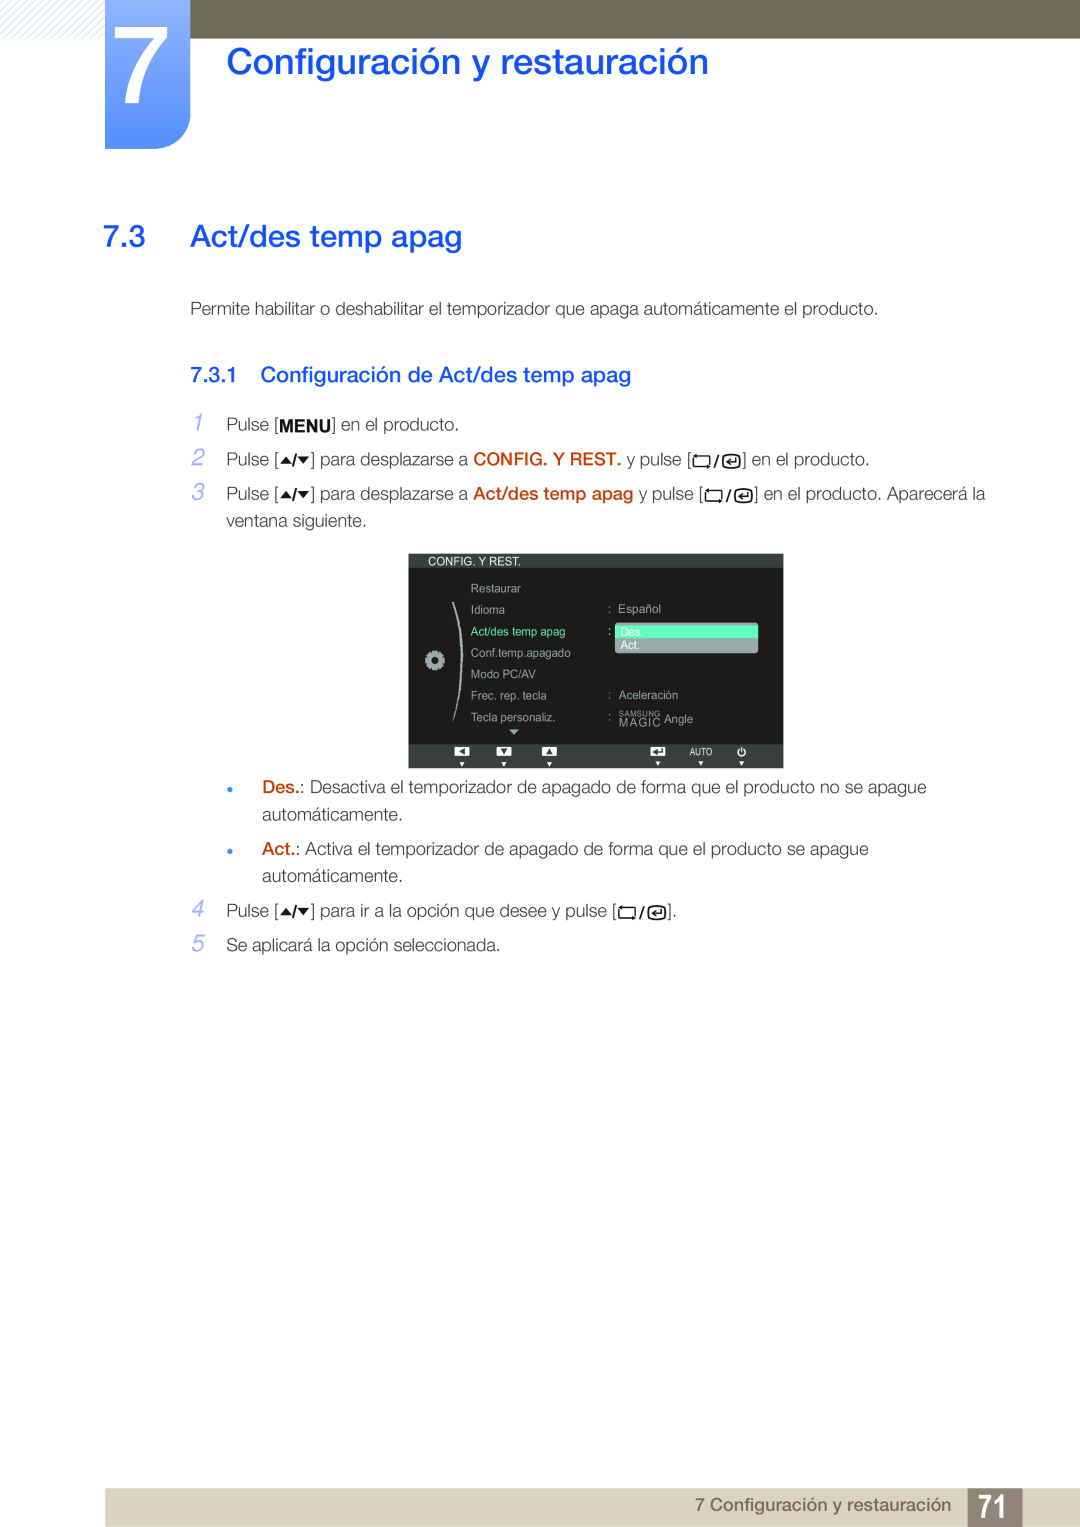 Samsung LF22TSWTBDN/EN manual 7.3 Act/des temp apag, Configuración de Act/des temp apag, Configuración y restauración 